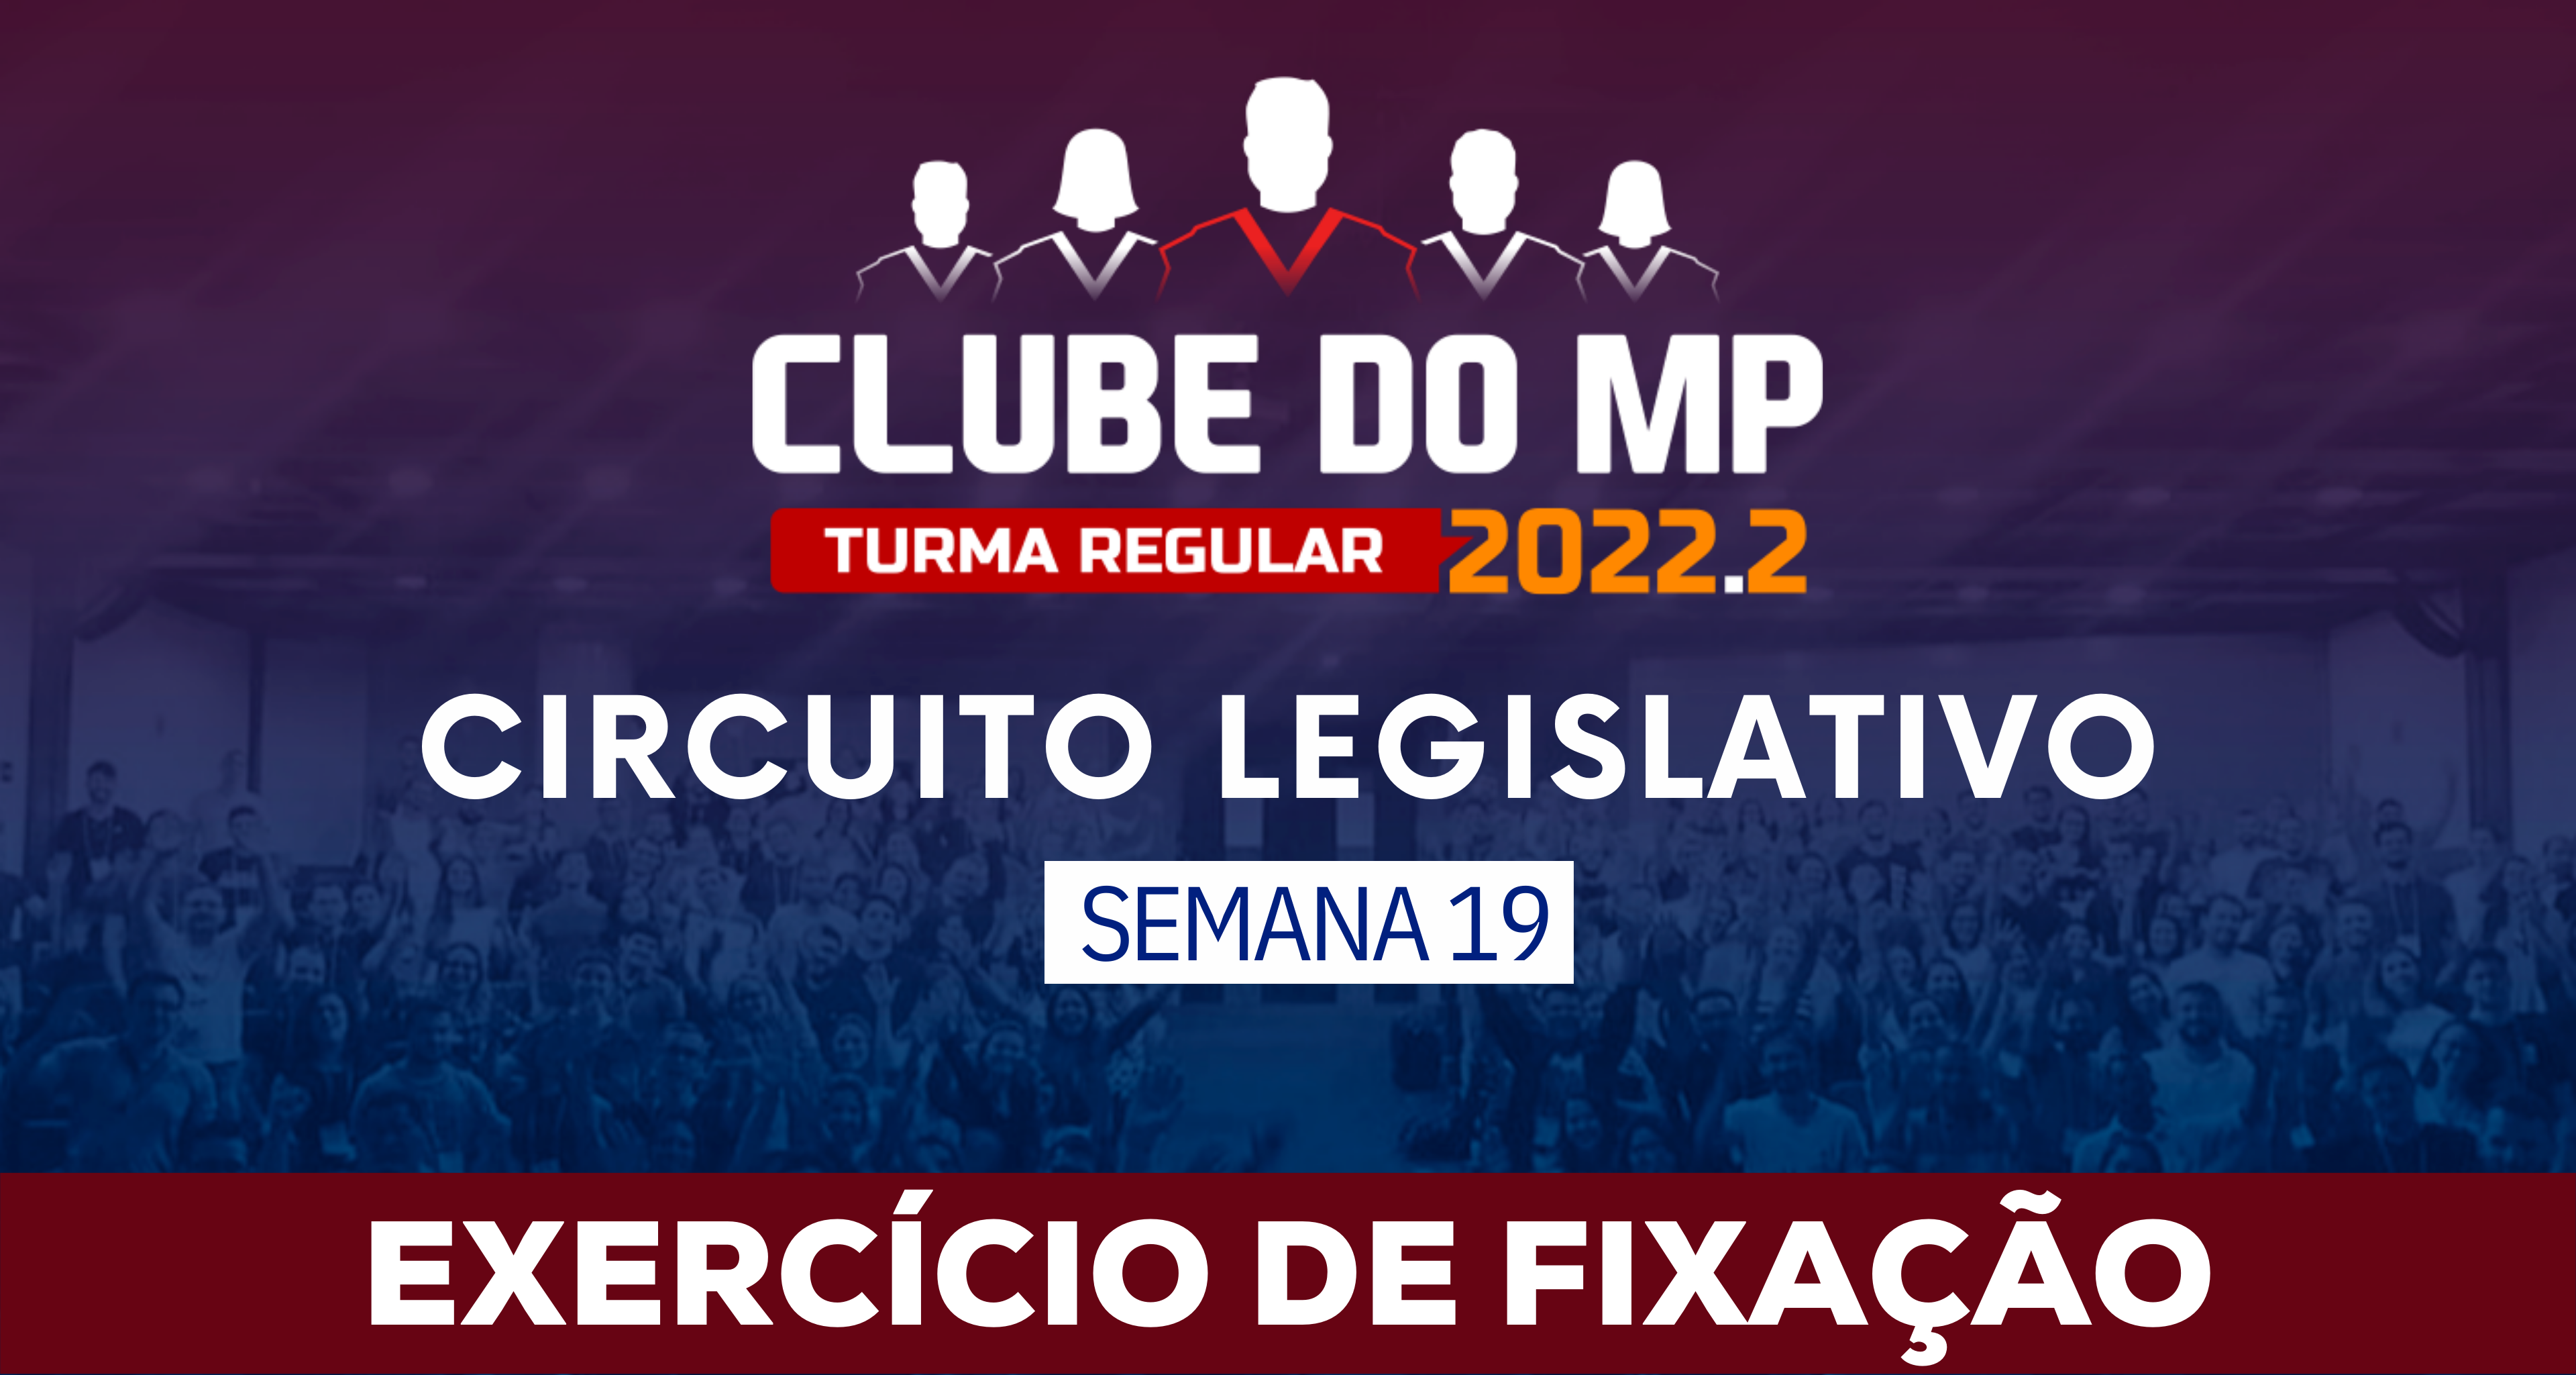 Circuito Legislativo 2022.2 (Clube do MP - Semana 19)